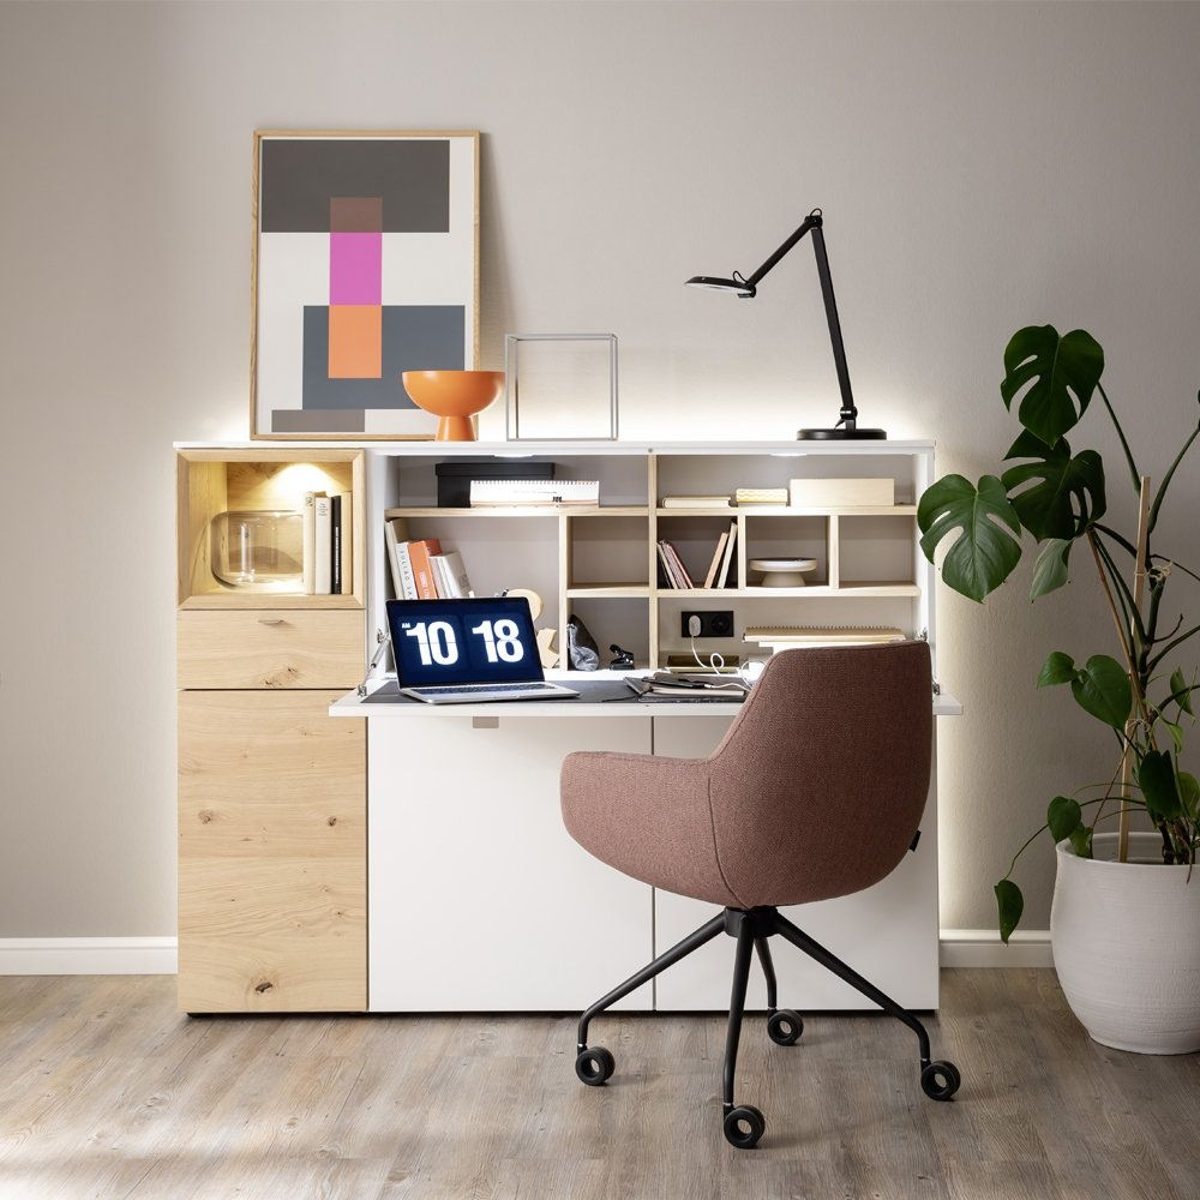 Schöner Wohnen Kollektion shoppen - Office Schreibtischleuchten coole